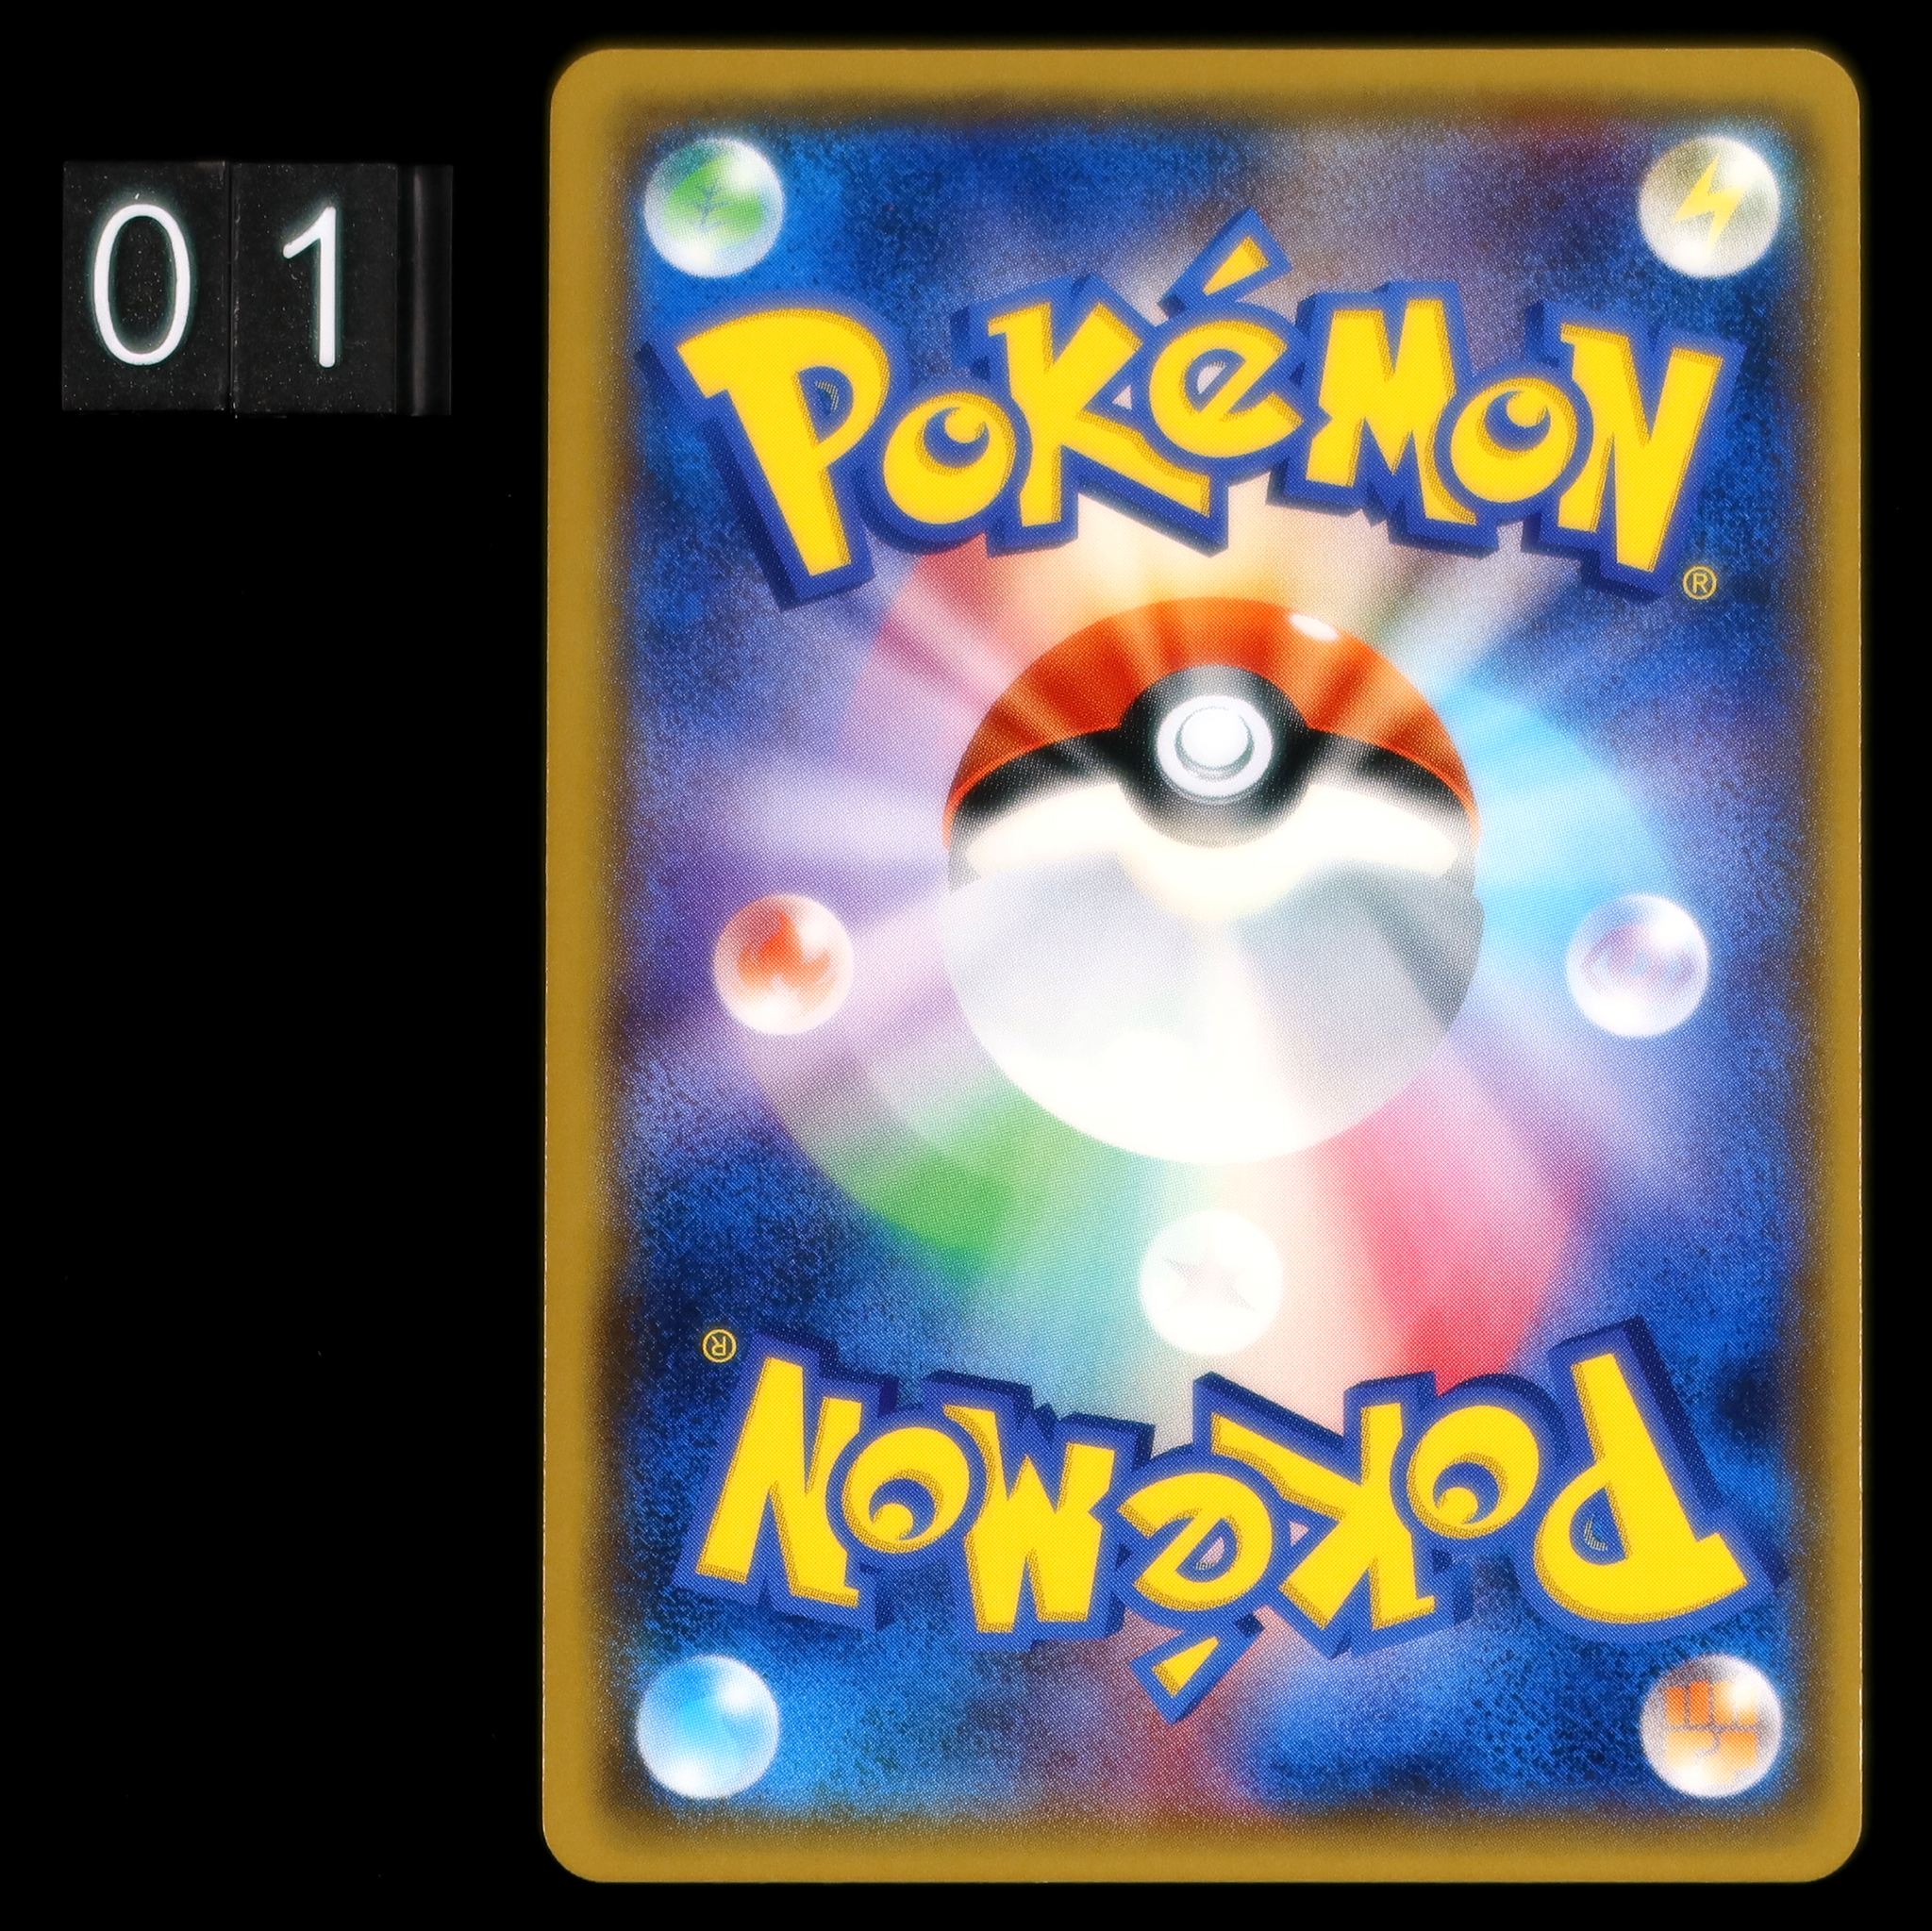 Pokémon Card Game PROMO 211/SM-P